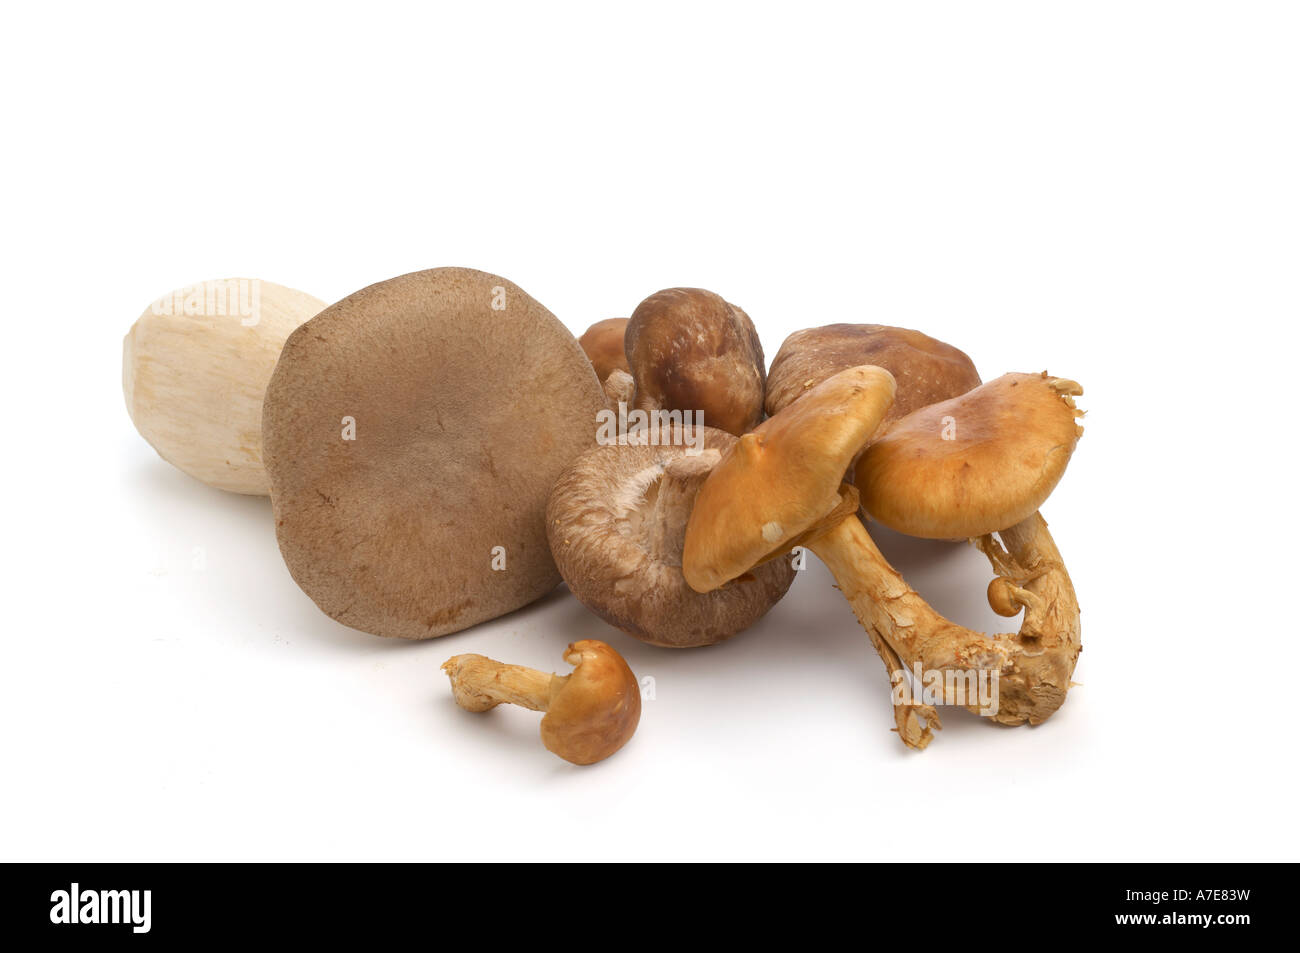 Collection de champignons shiitake eryngii exotiques et brocolis Banque D'Images